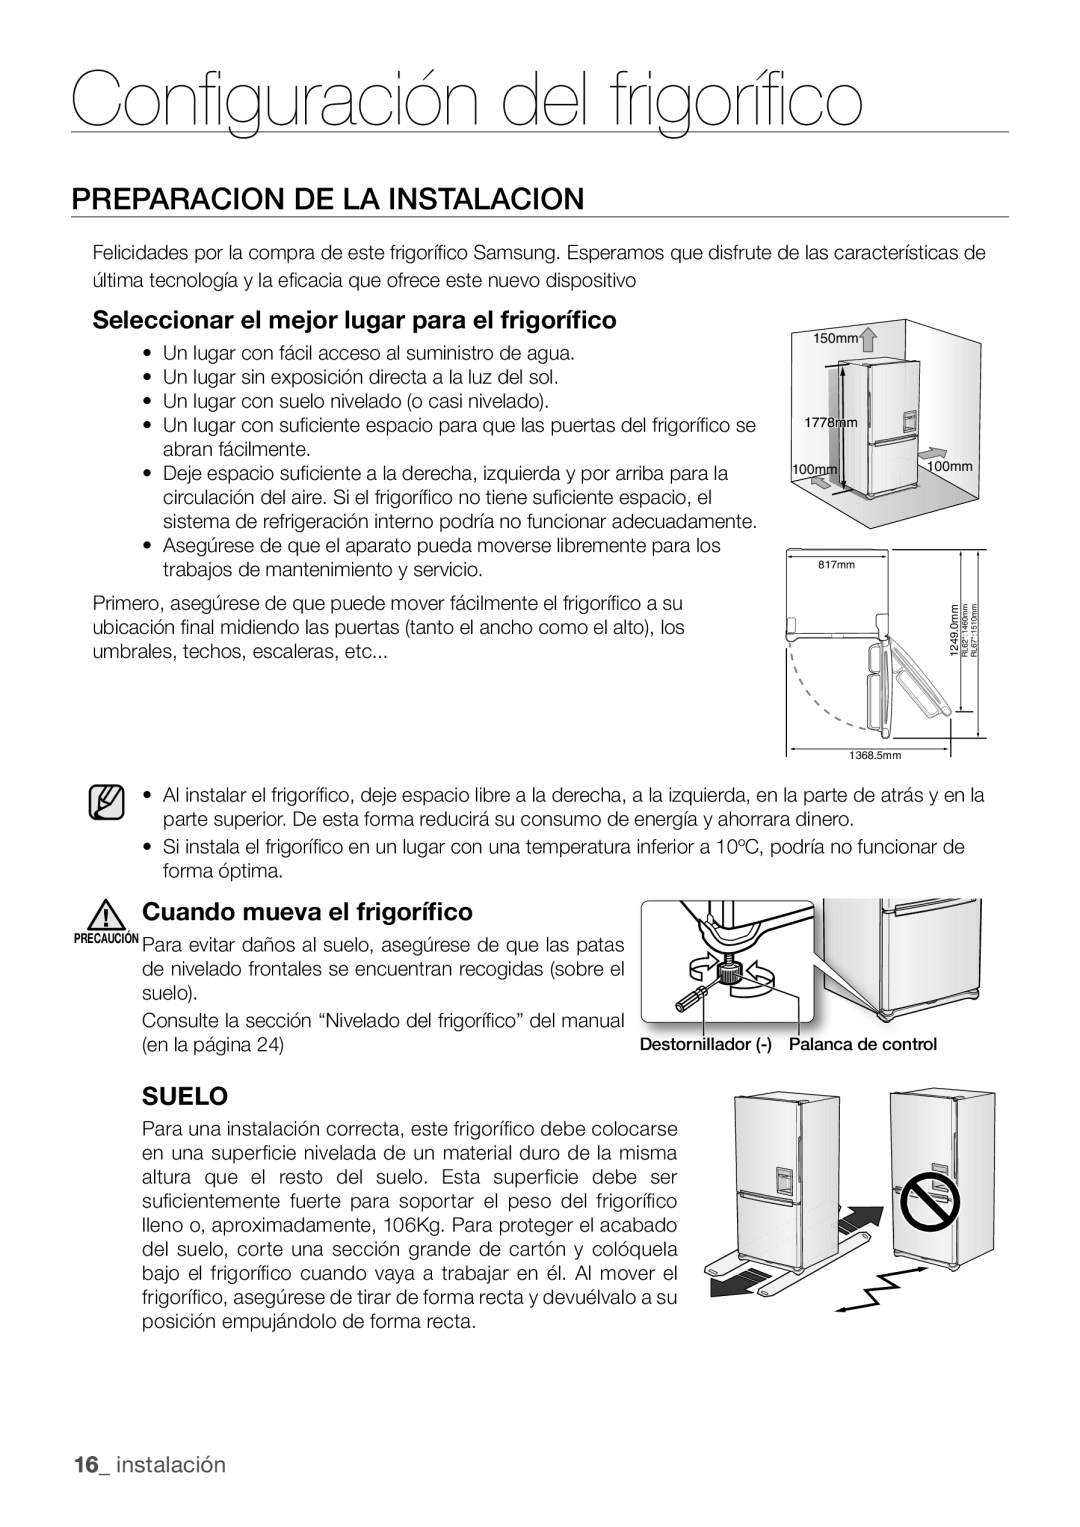 Samsung RL67VCSH1/XES Configuración del frigorífico, Preparacion De La Instalacion, Cuando mueva el frigorífico, Suelo 